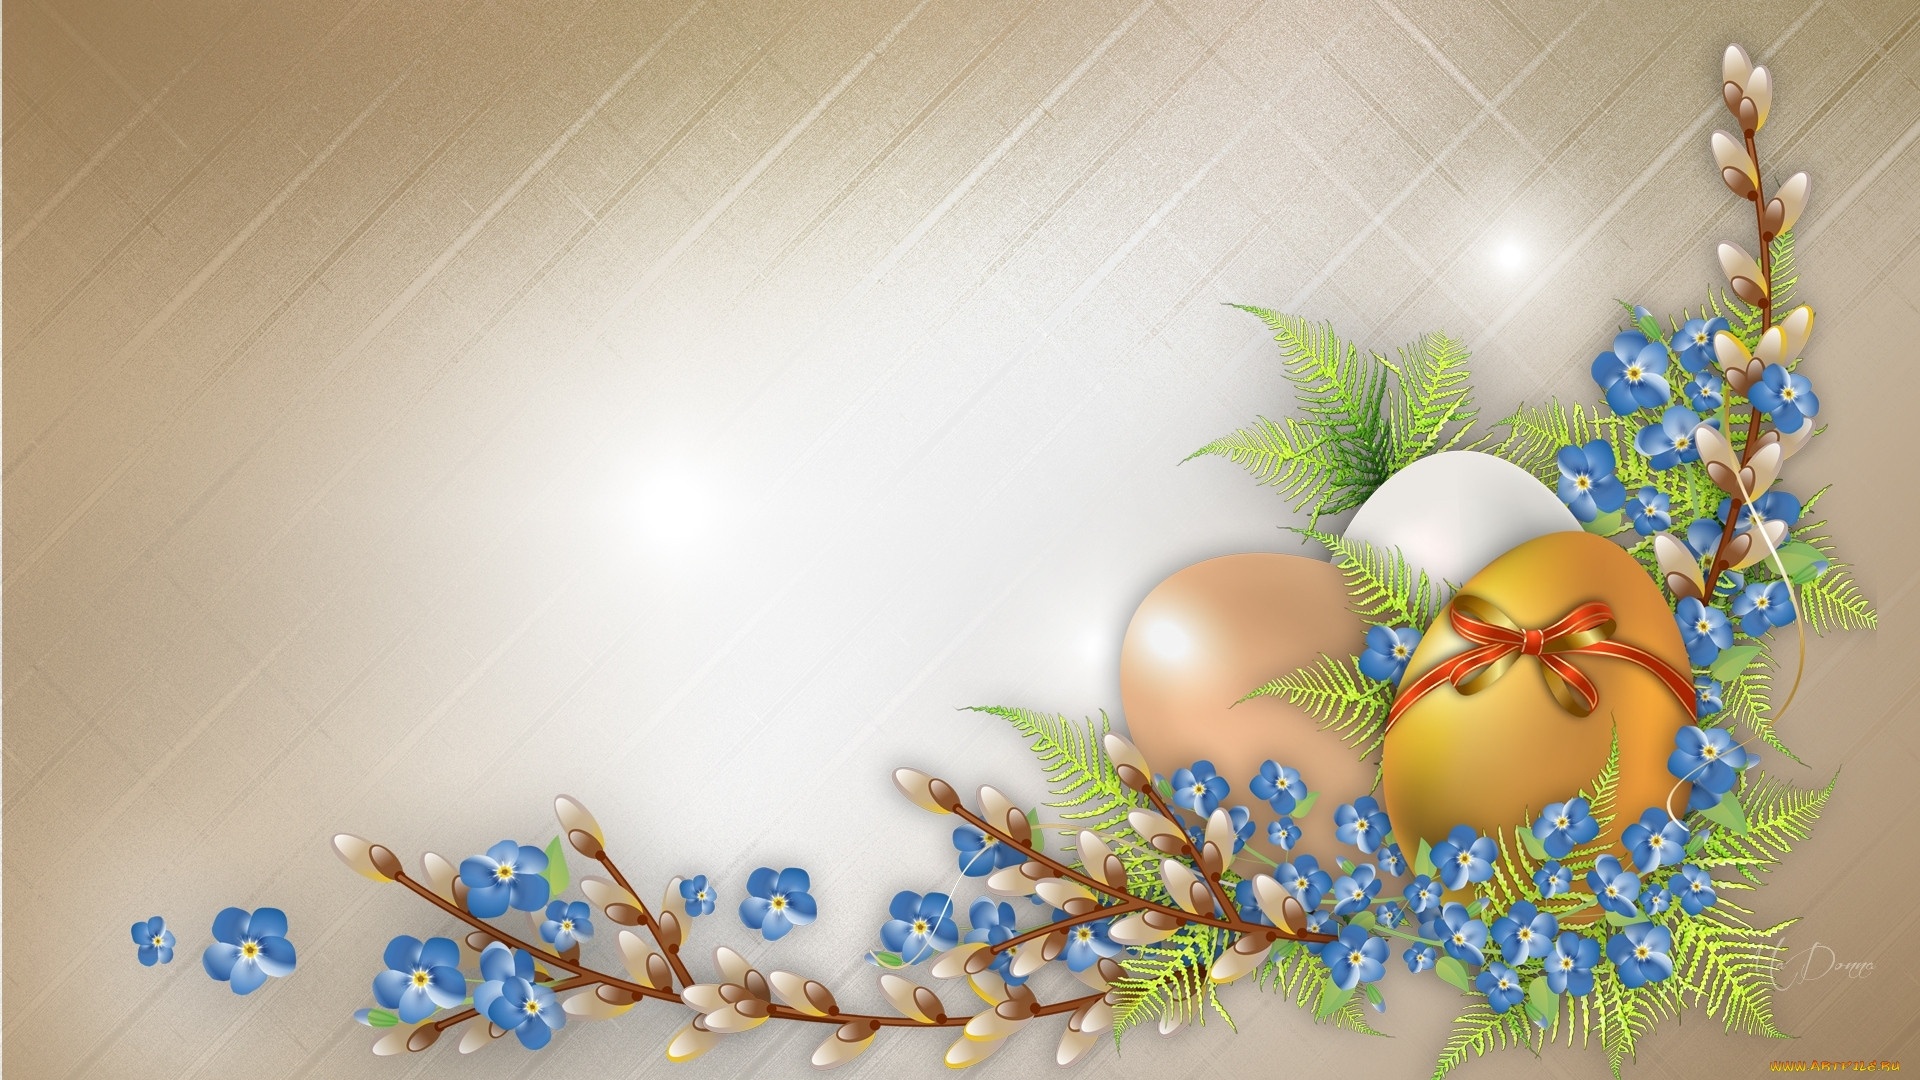 Background For Easter Card desktop wallpaper hd